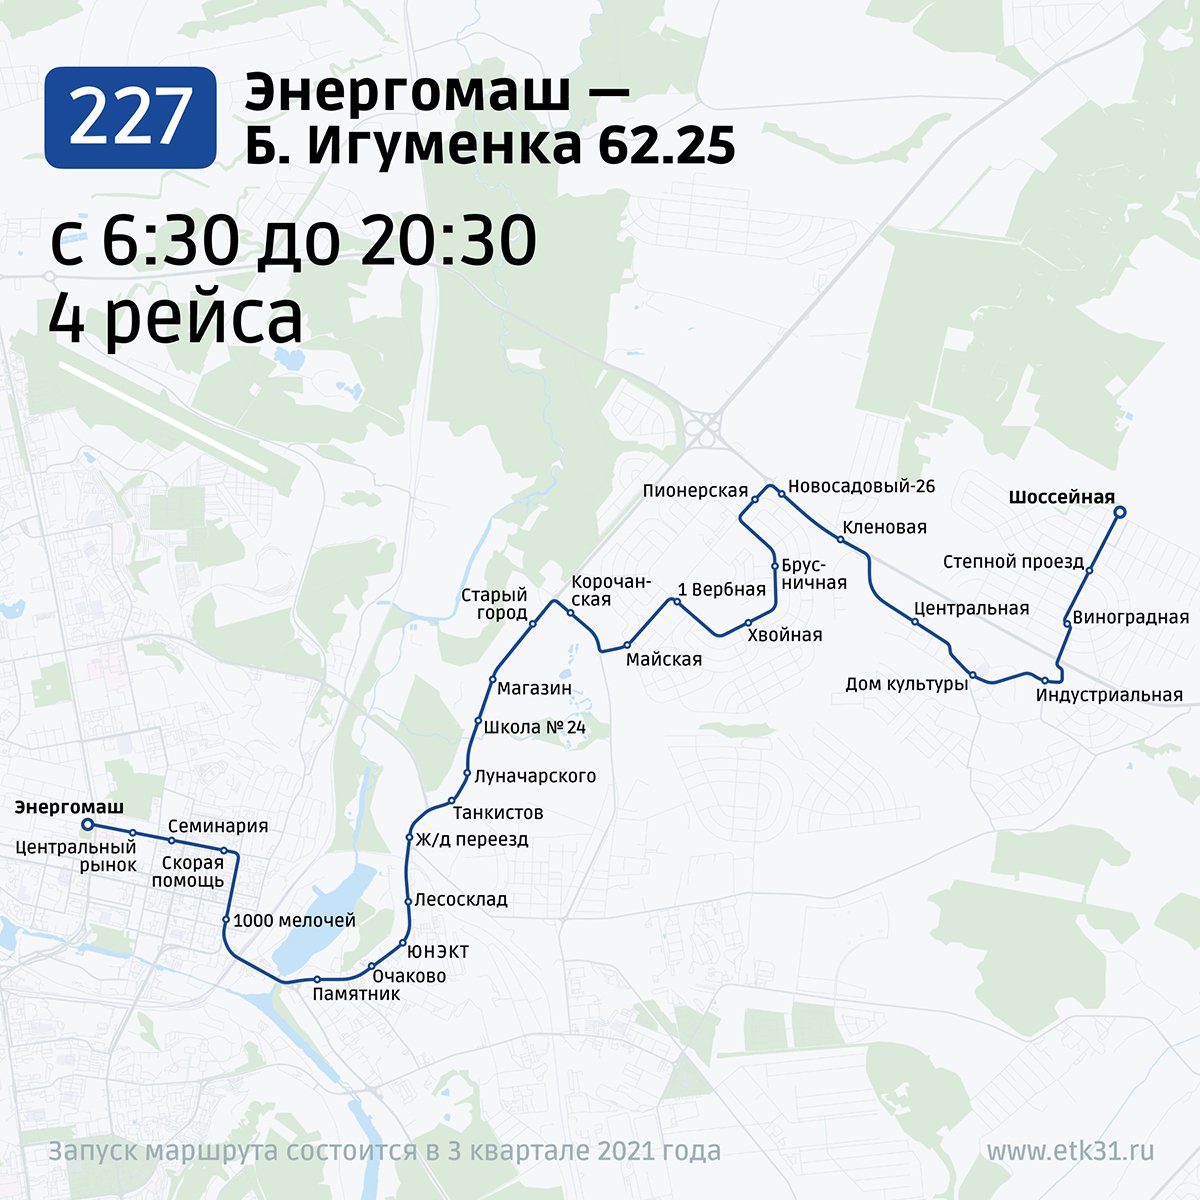 25 маршрут новый расписание. Схема маршрута. Новая маршрутная сеть Белгород. Карта маршрута автобуса. Схема маршрутов автобусов Белгород 2022 год.